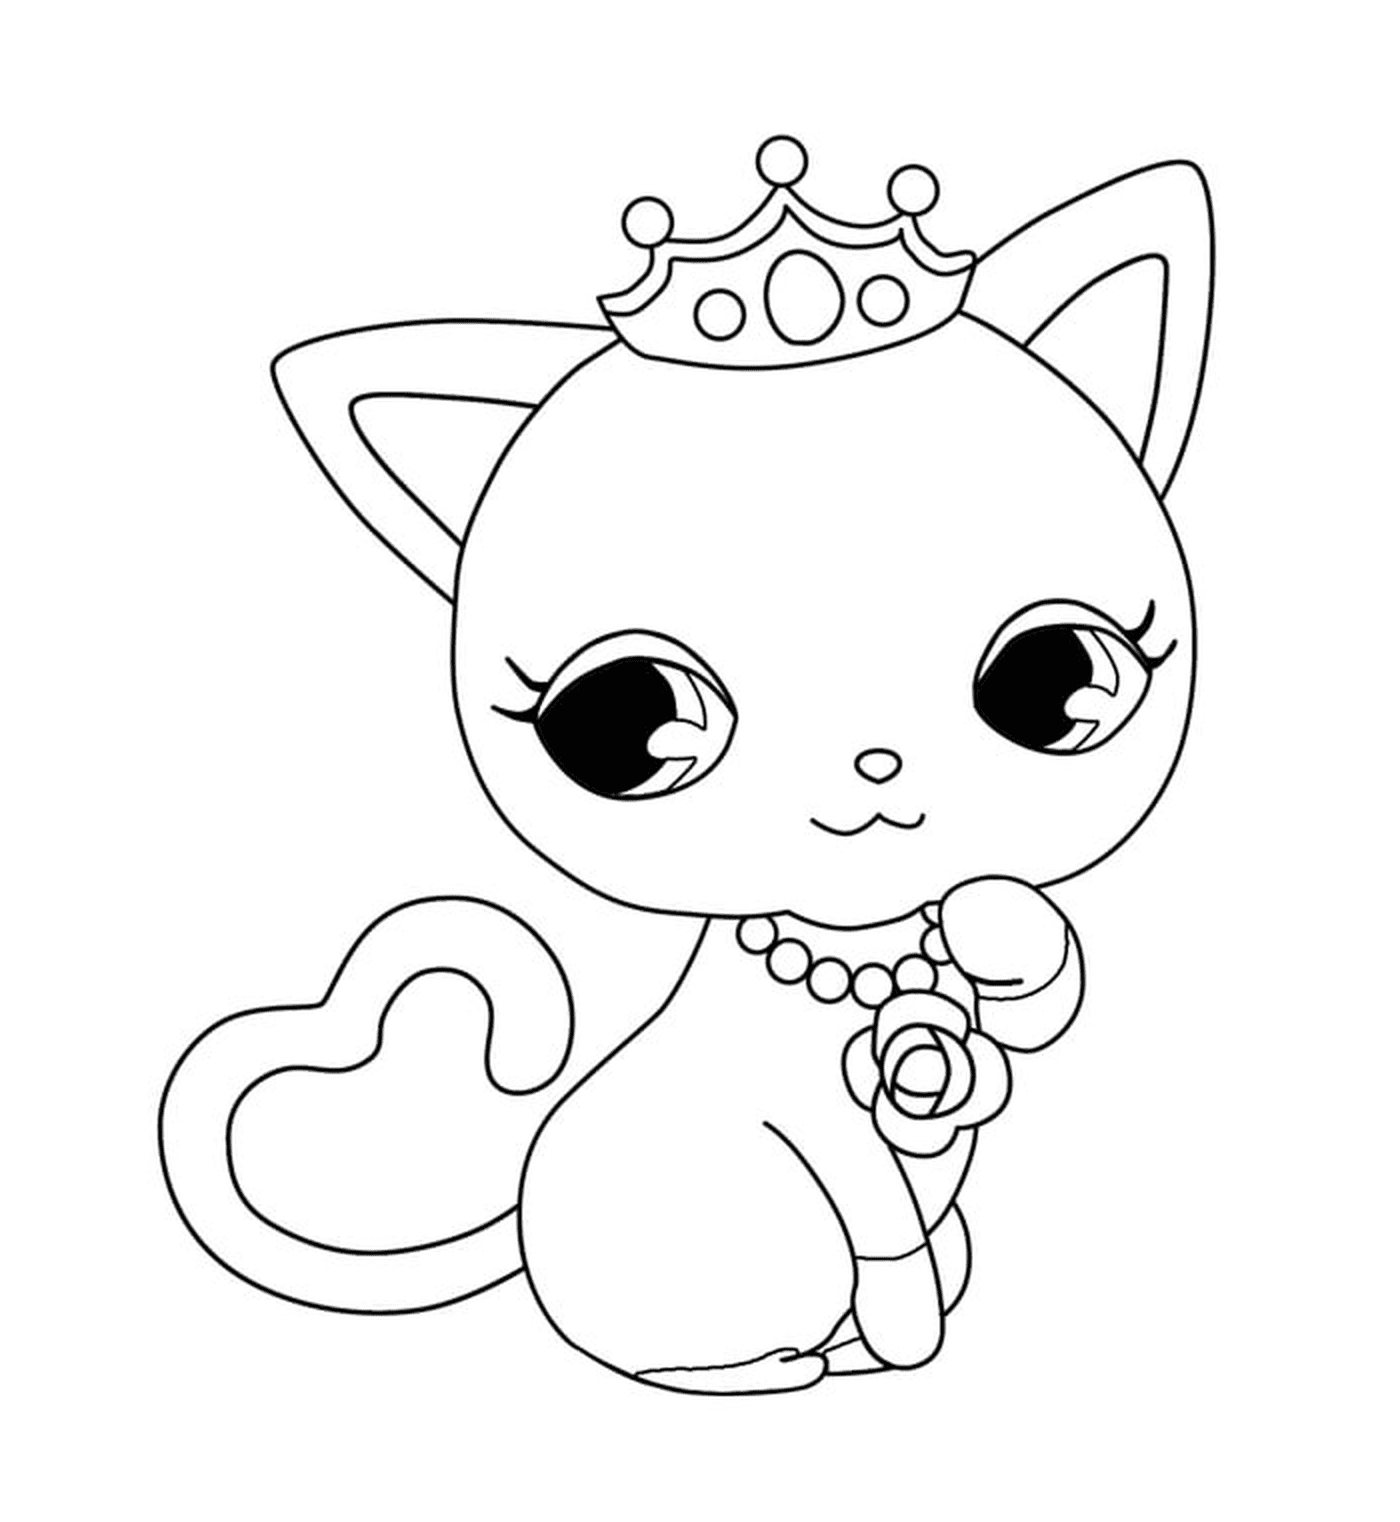   Un chat princesse kawaii avec une couronne sur la tête 